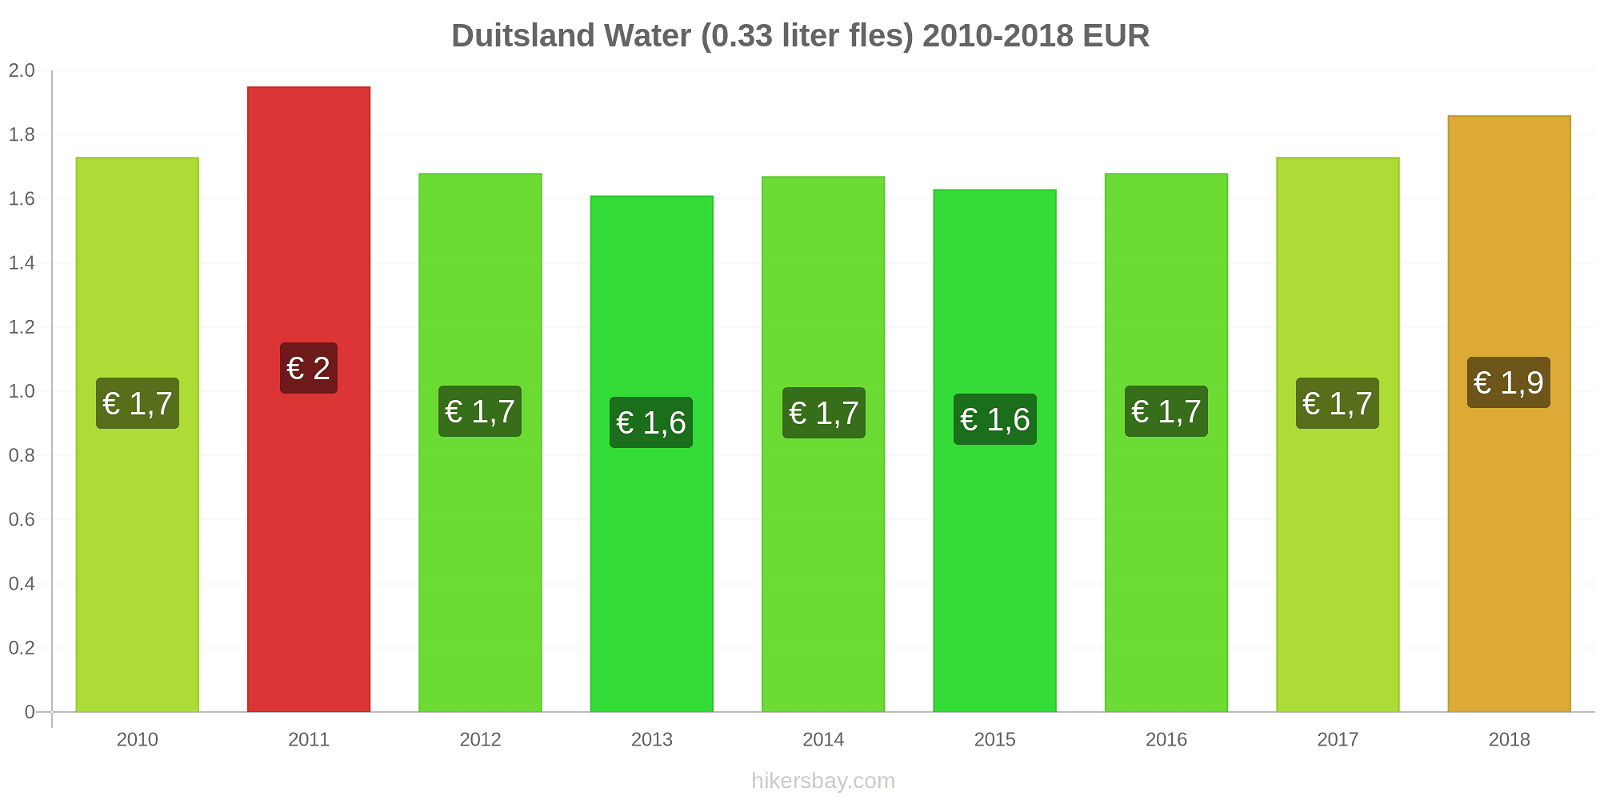 Duitsland prijswijzigingen Water (0,33 liter fles) hikersbay.com